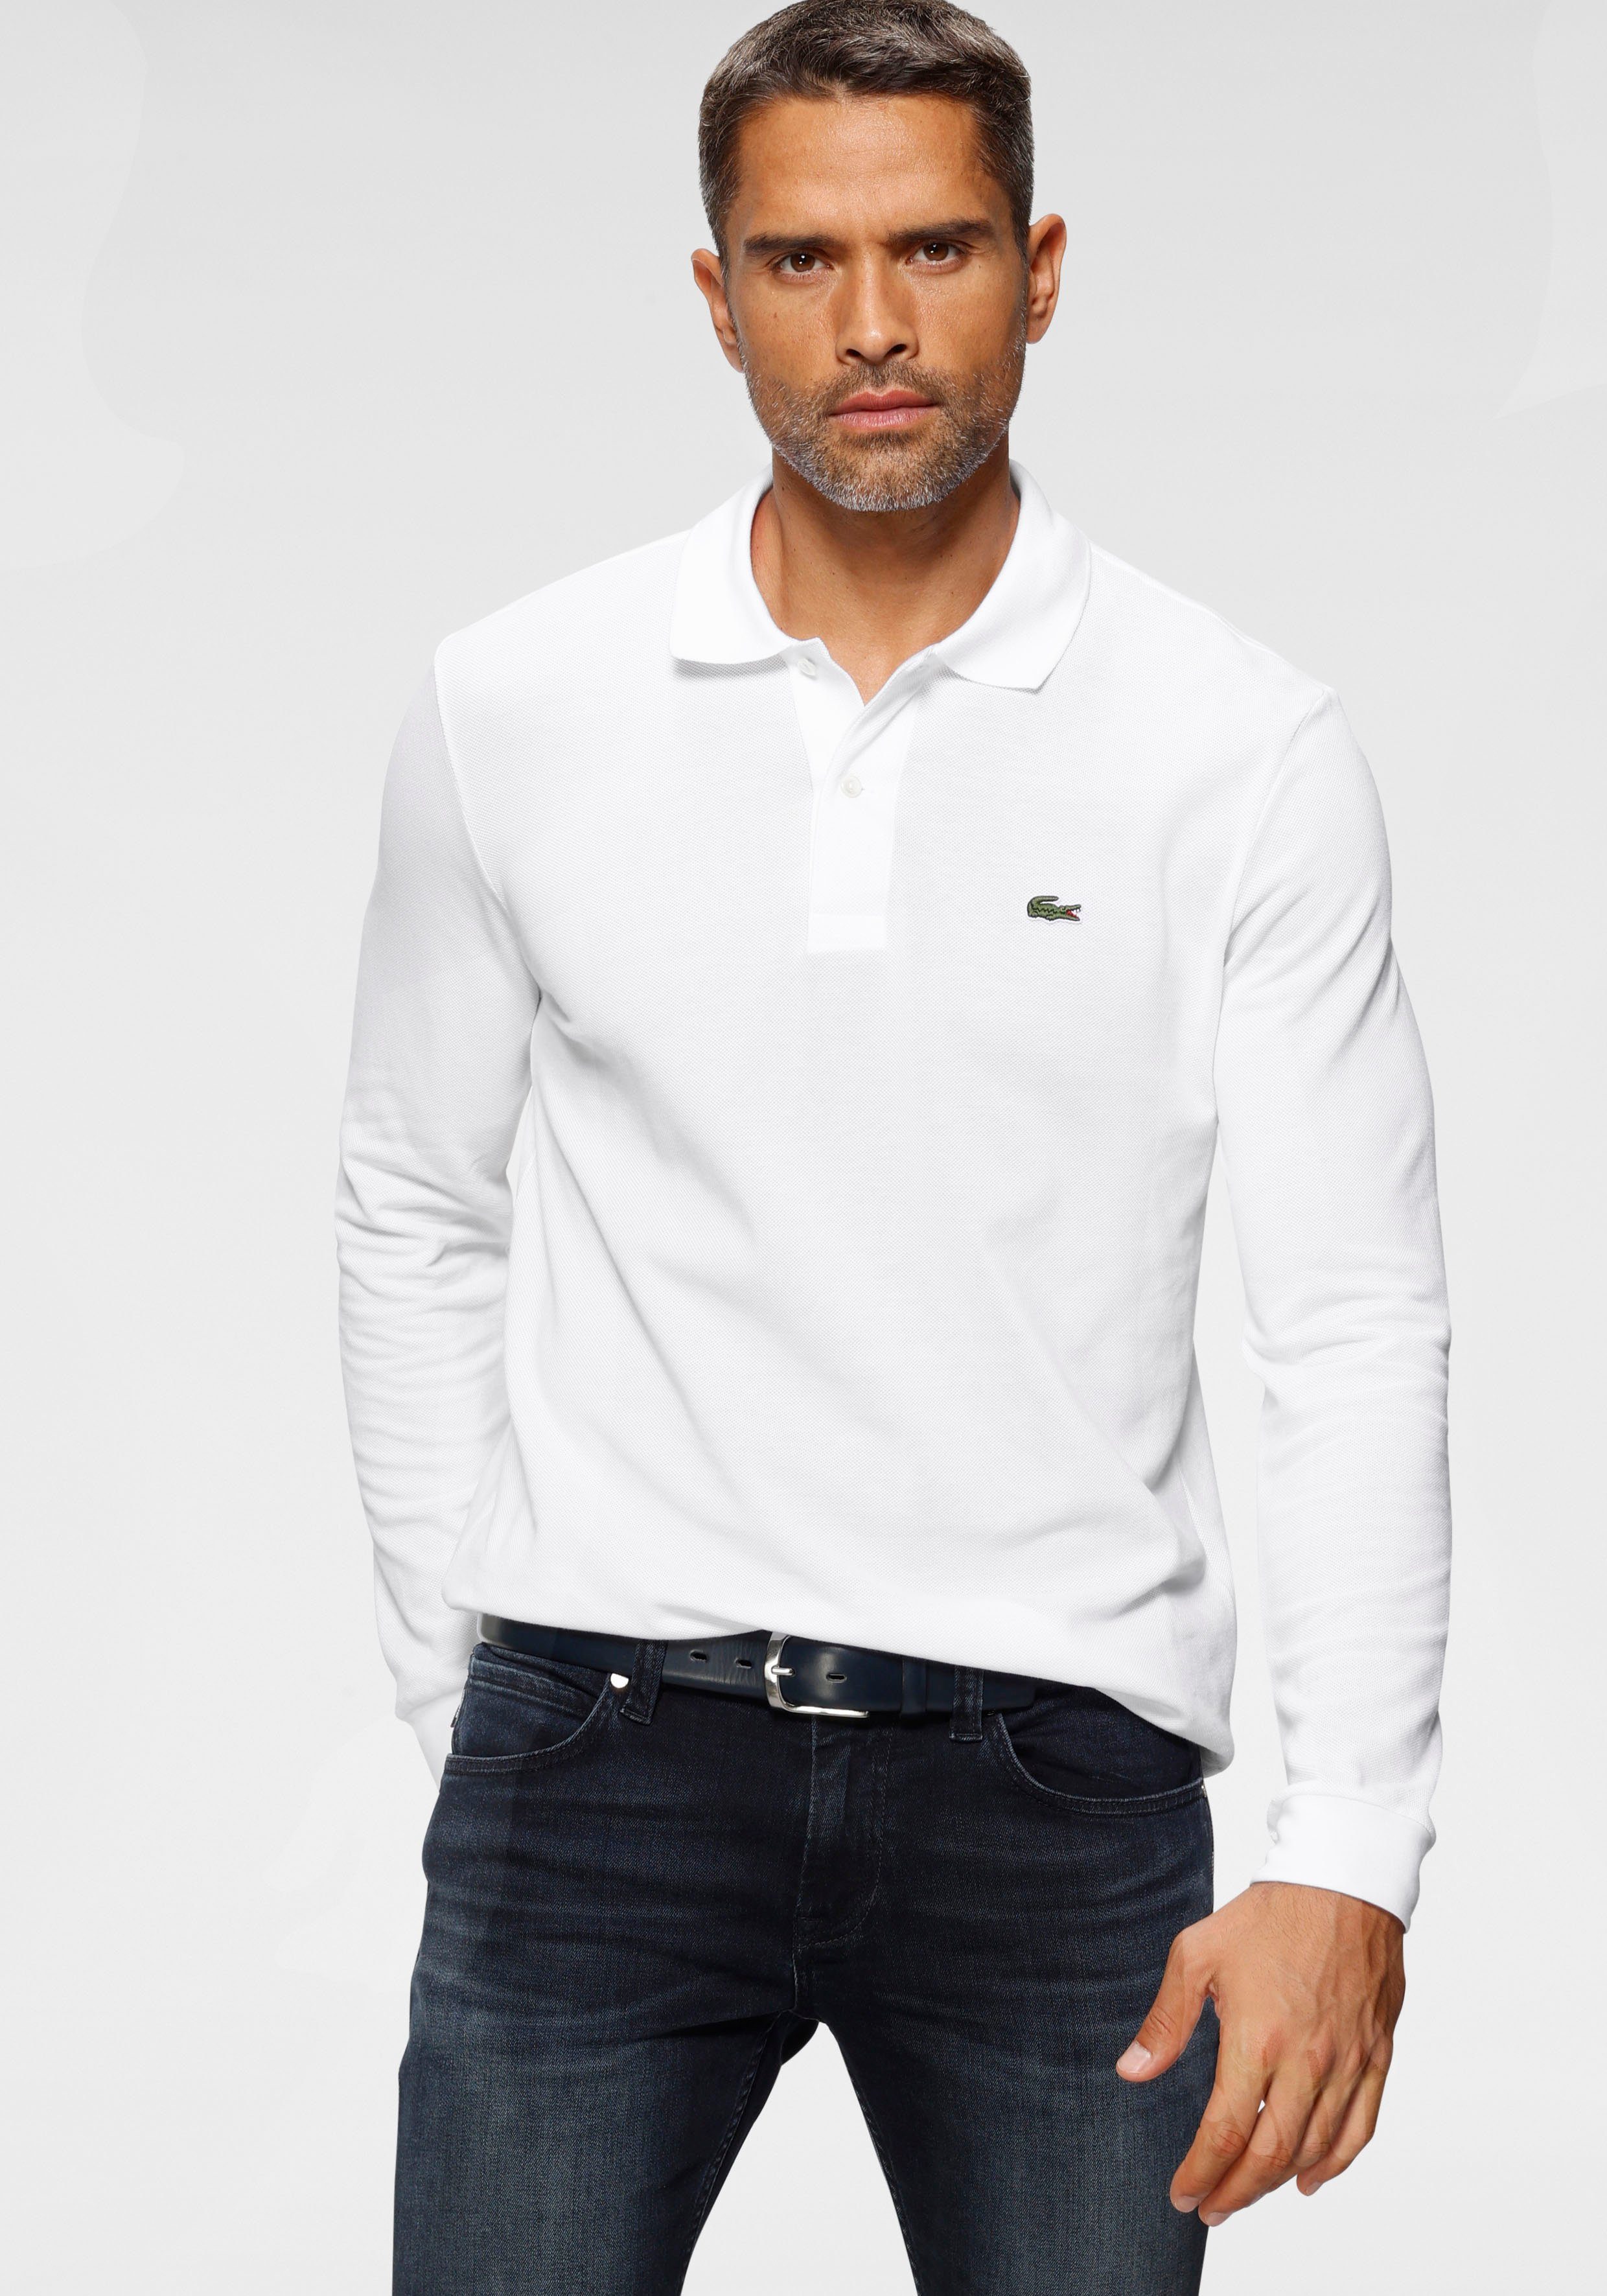 Lacoste Langarm-Poloshirt Basic Style weiß